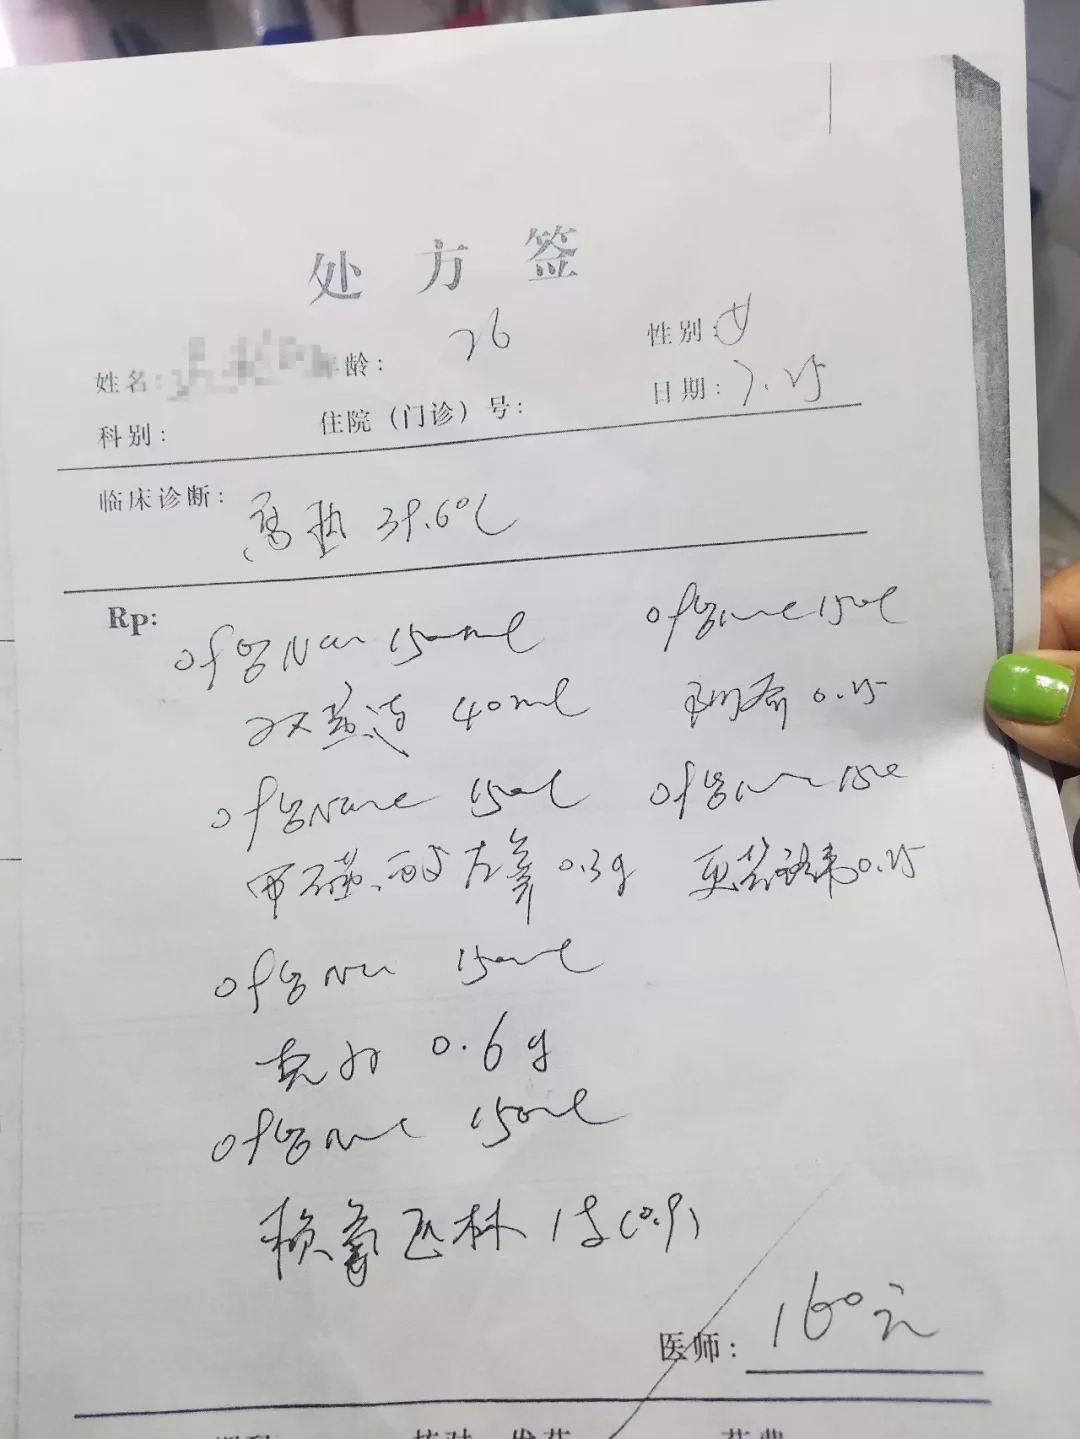 哈市26岁新婚女子在江北一私人诊所输液后意外死亡!